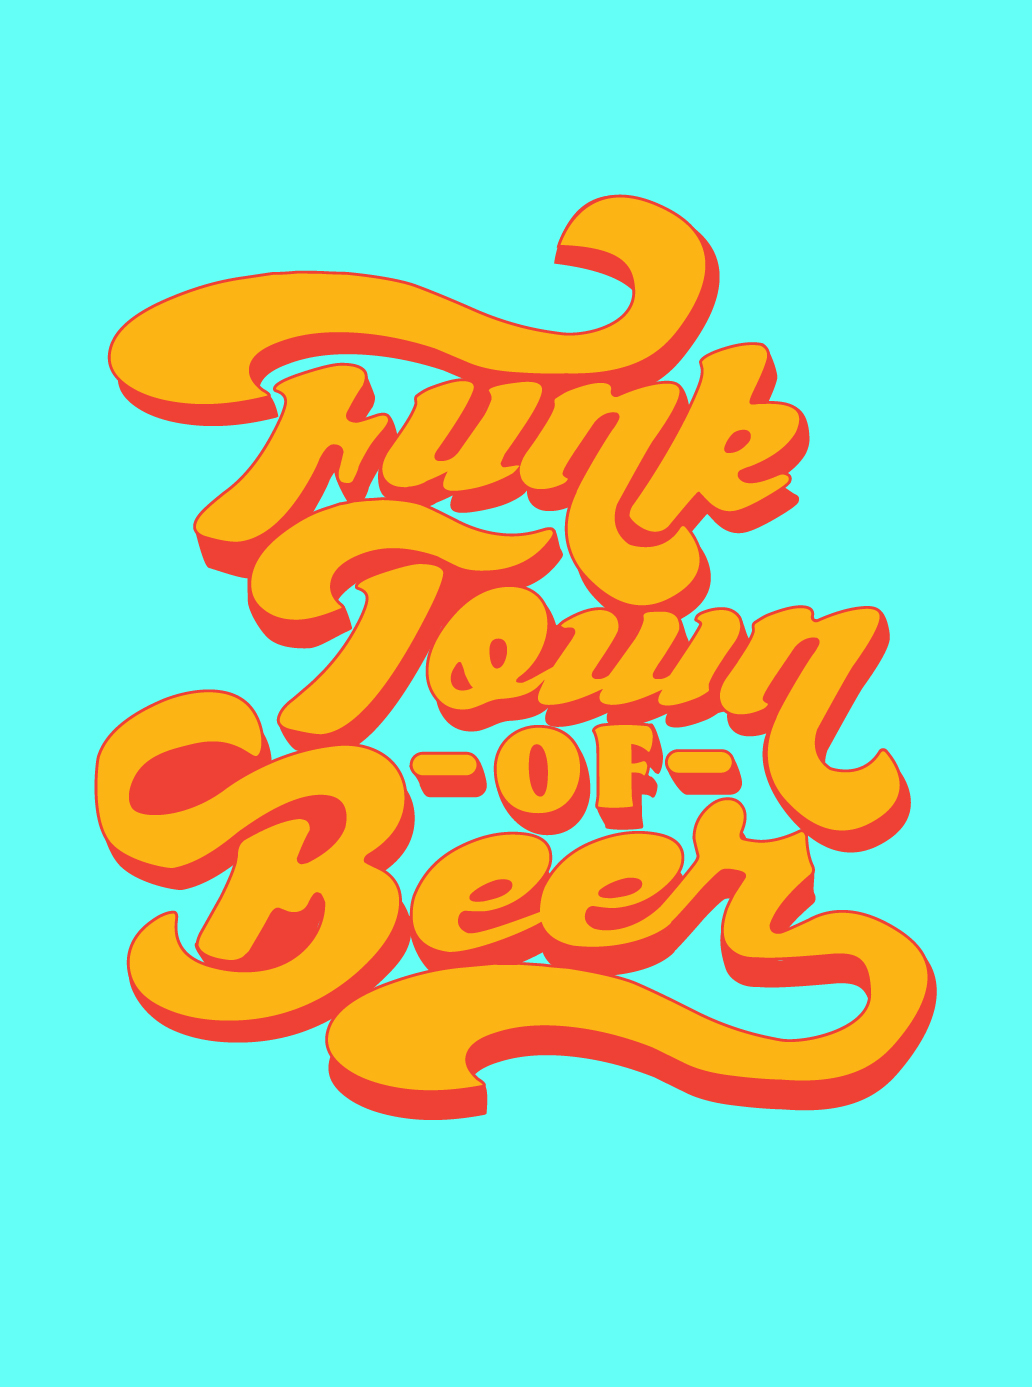 Funk Town of Beer